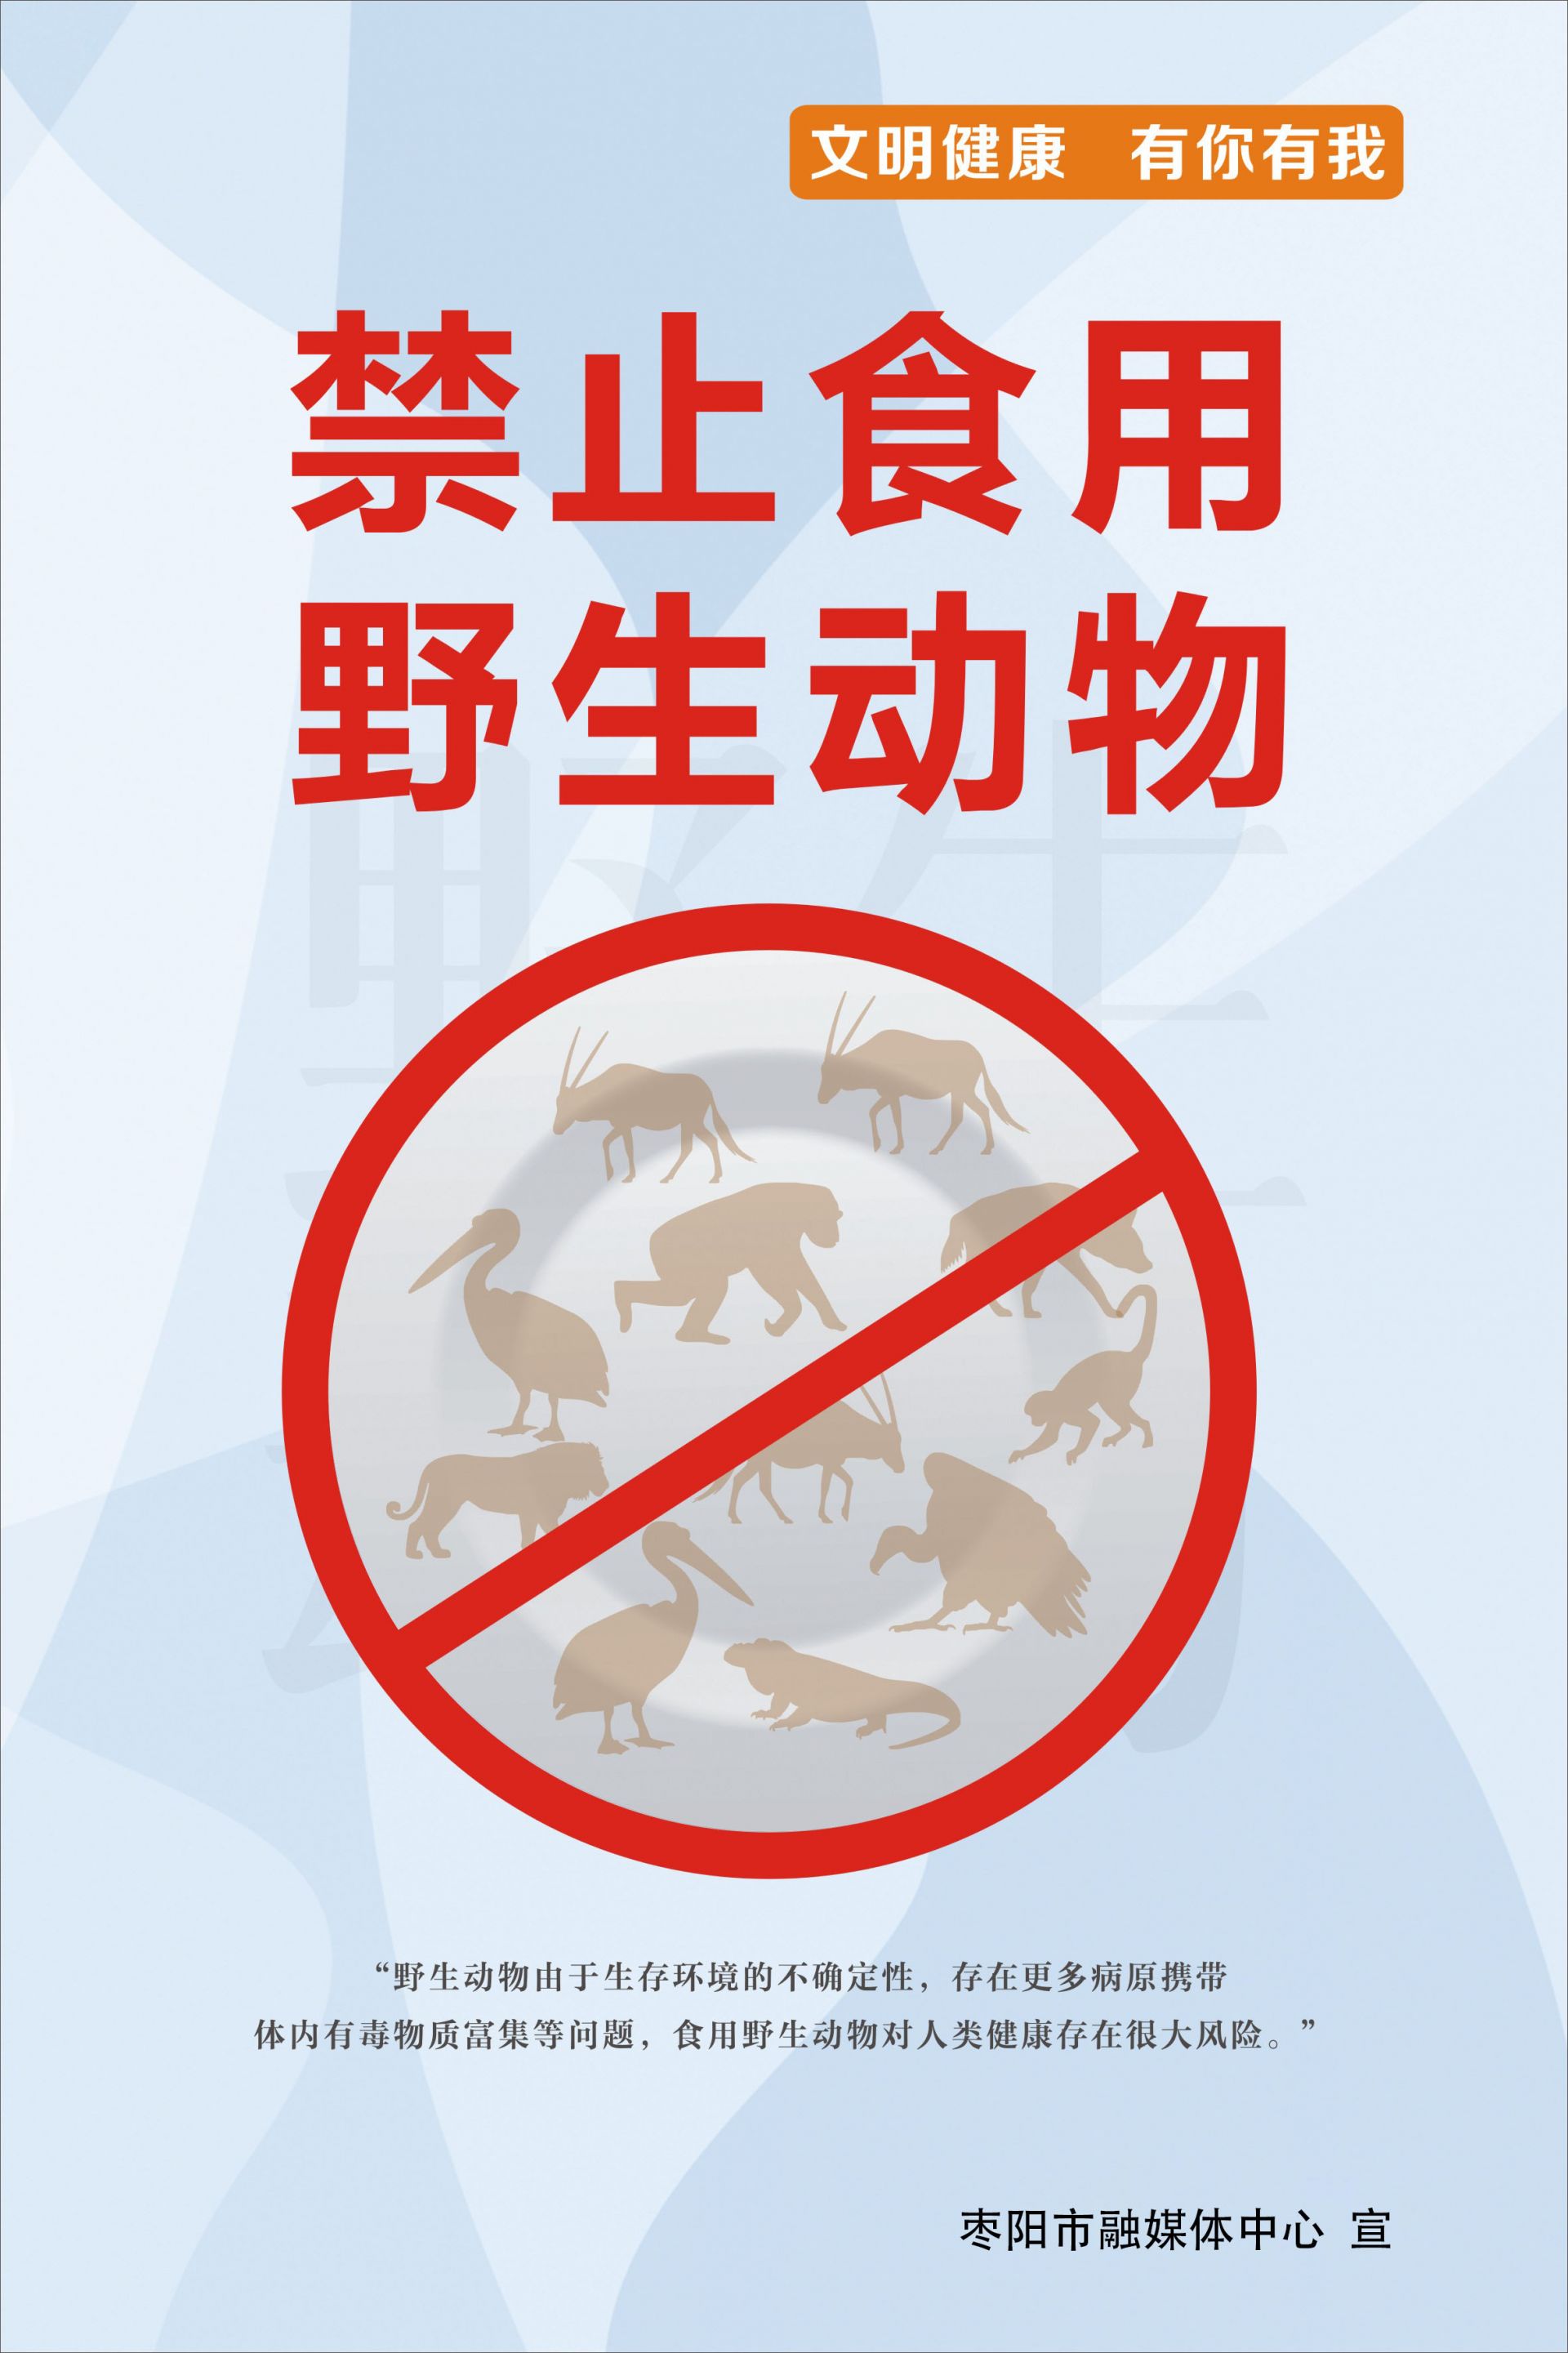 禁食野生动物名单图片